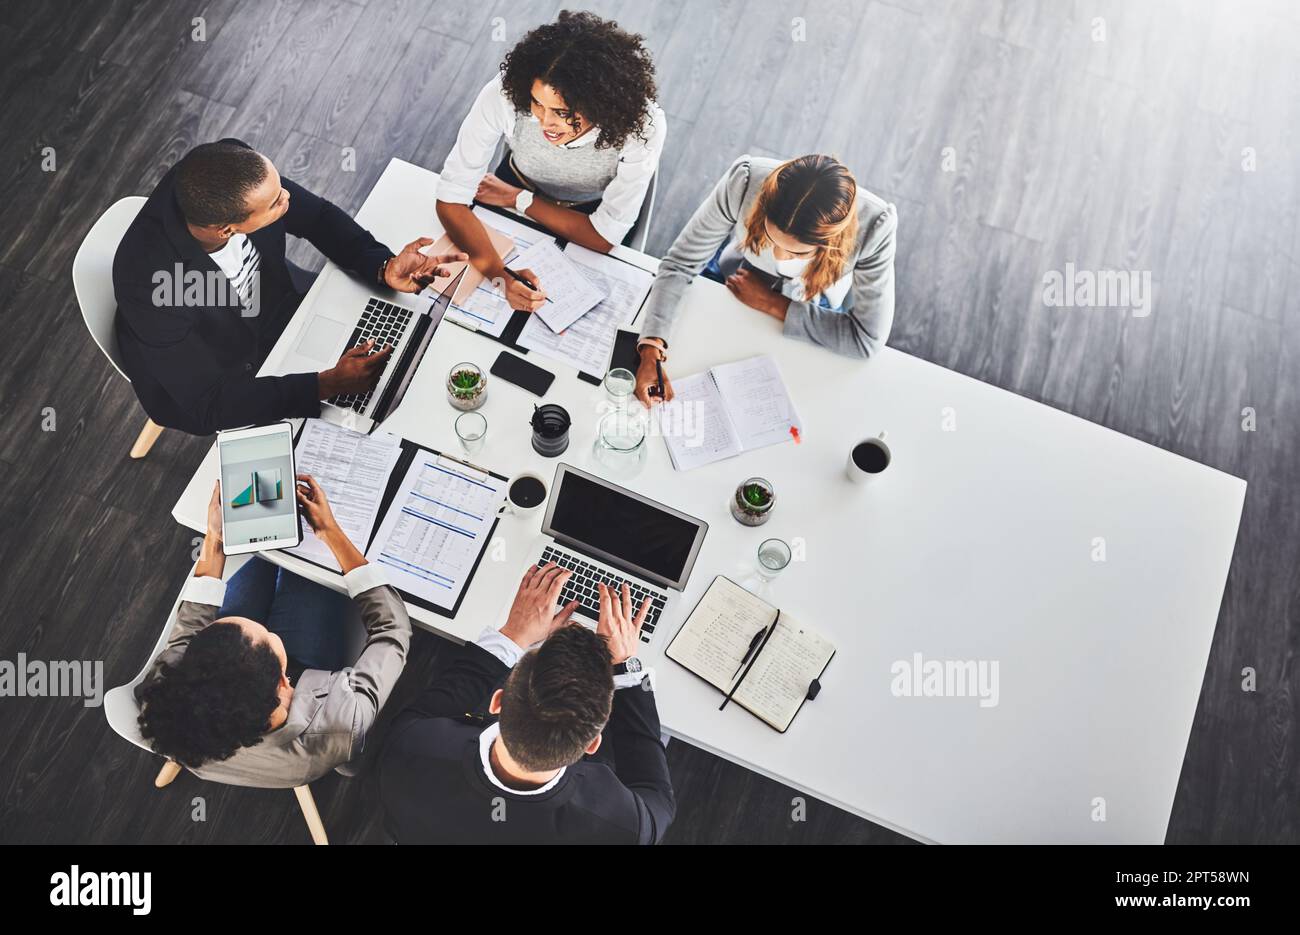 Respecter leurs normes de travail les plus élevées. Photo en grand angle d'un groupe d'hommes d'affaires ayant une réunion dans un bureau Banque D'Images